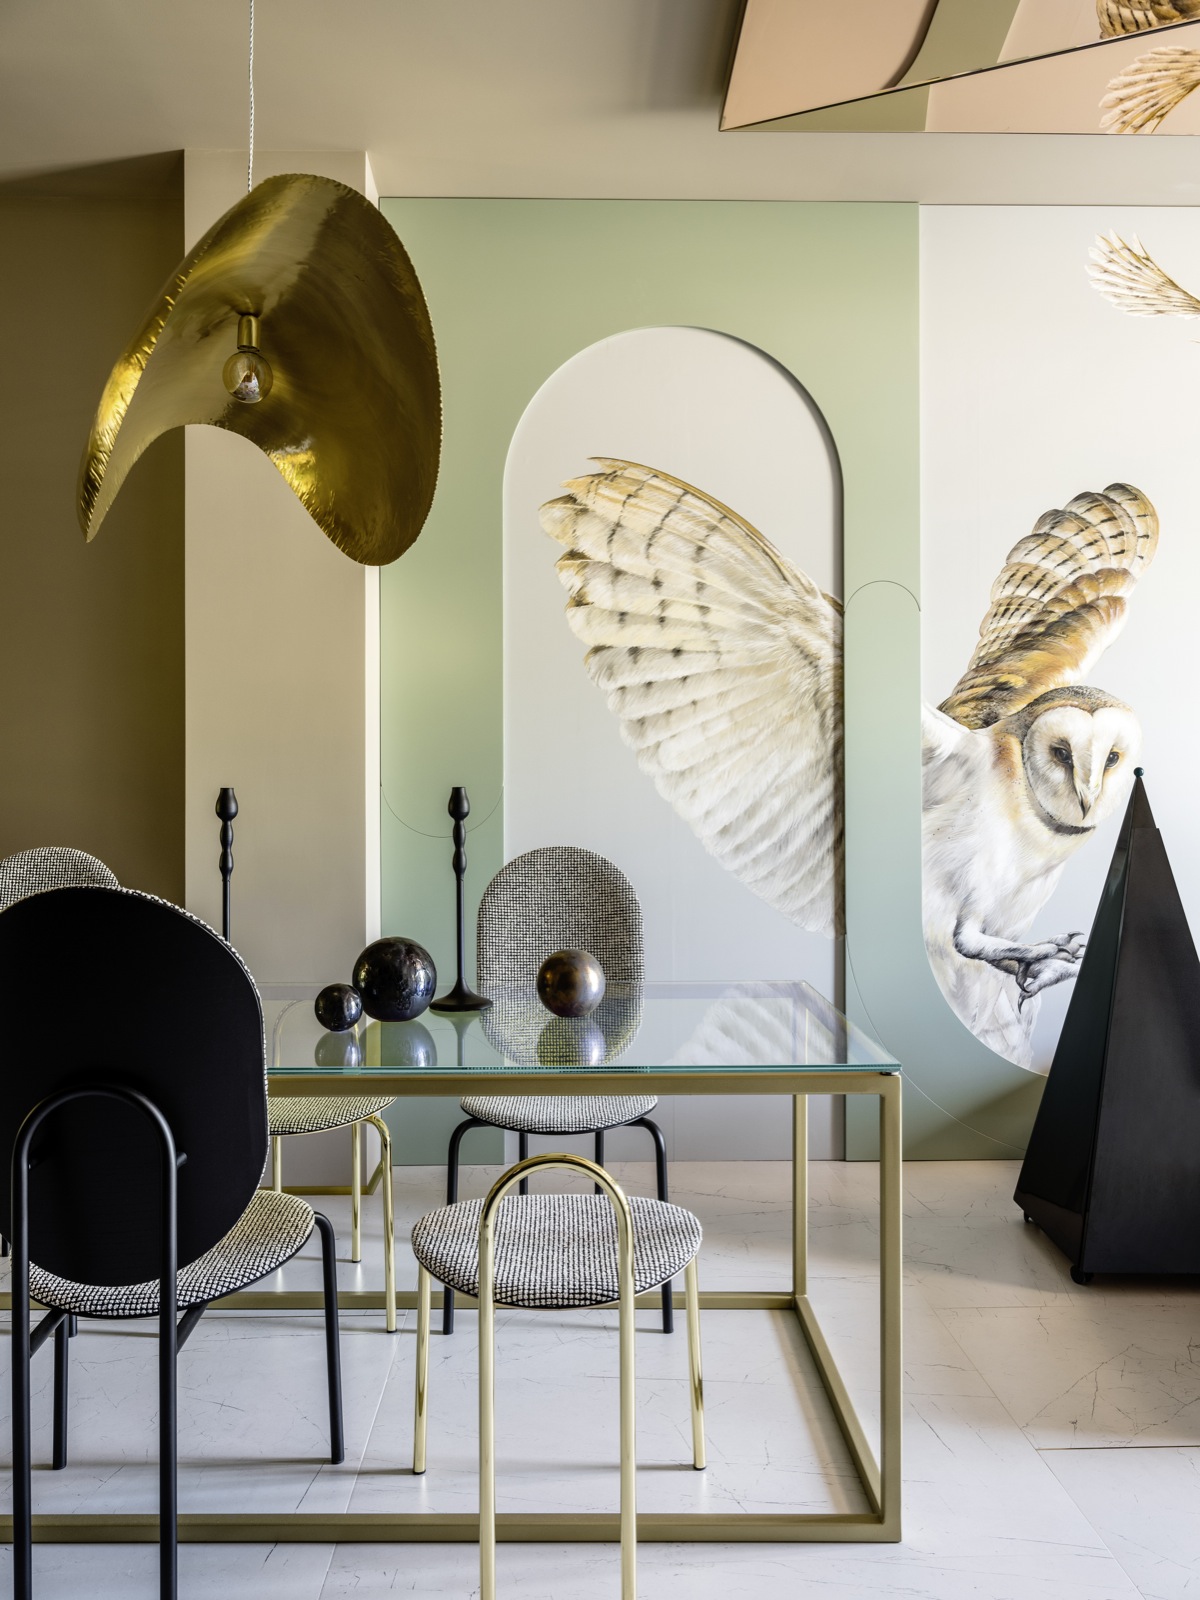 Dự án thiết kế của 2 NTK Tatiana Bubnova và Alexey Rubashenka với nội thất phong cách bán cổ điển dành cho khách hàng yêu thích sự khác biệt. Bức bích họa hình chim cú mèo sống động trên tường được thực hiện bởi họa sĩ Alexandra Malyuk. 